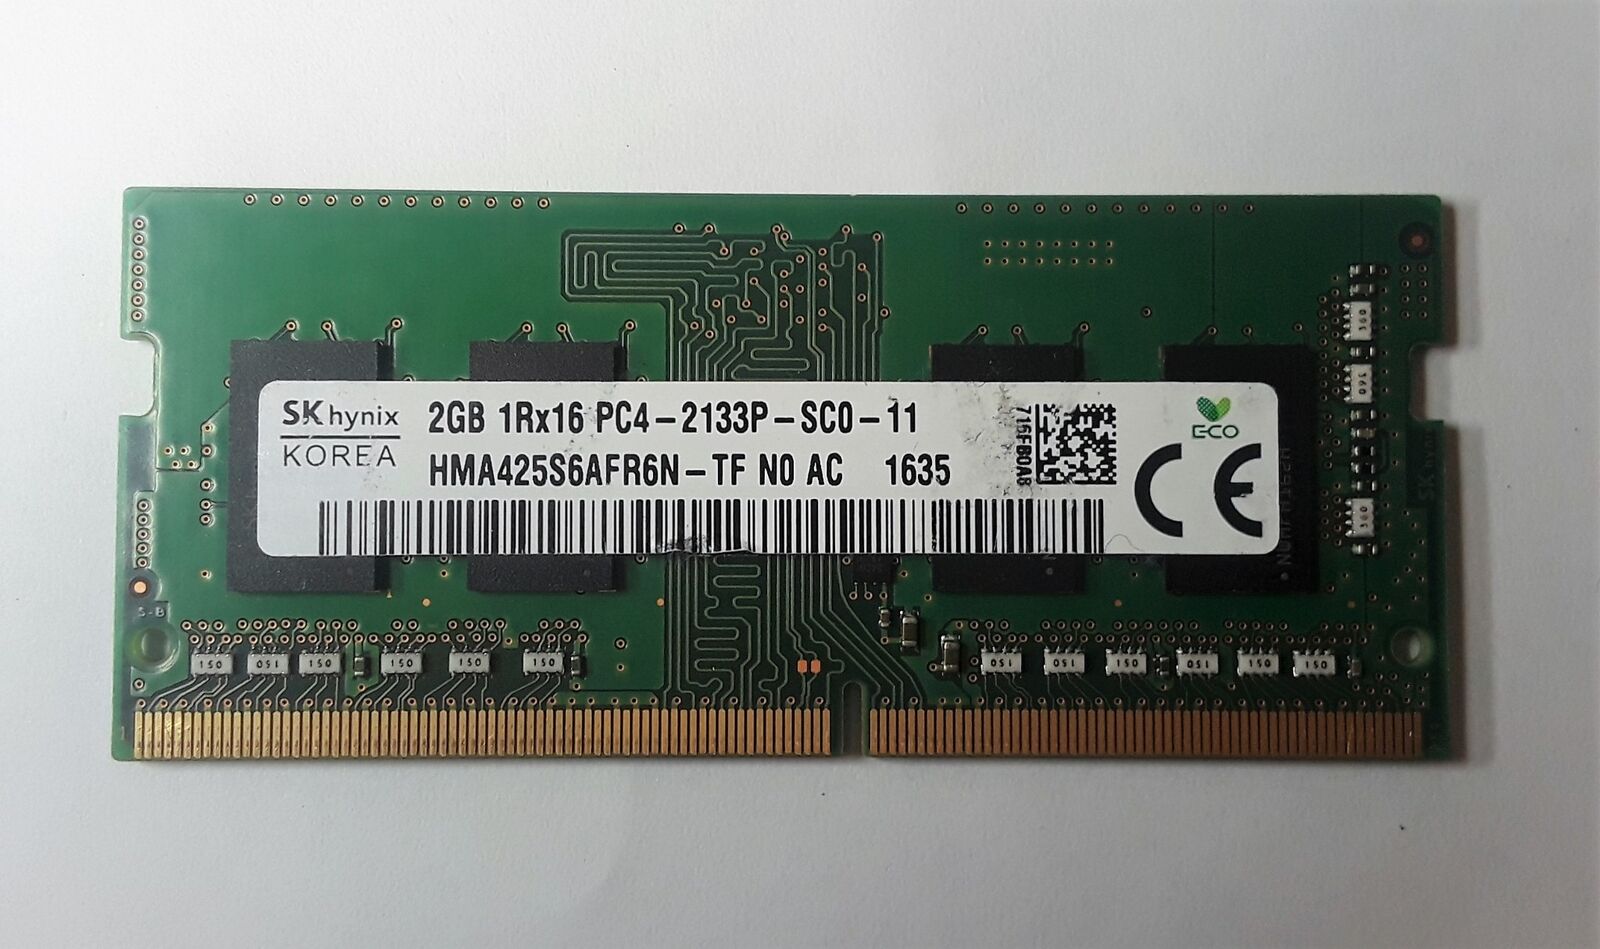 SK Hynix 2GB 1Rx16 PC4-2133P HMA425S6AFR6N-TF N0 AC MEMORY RAM 60 DAYS WARRANTY